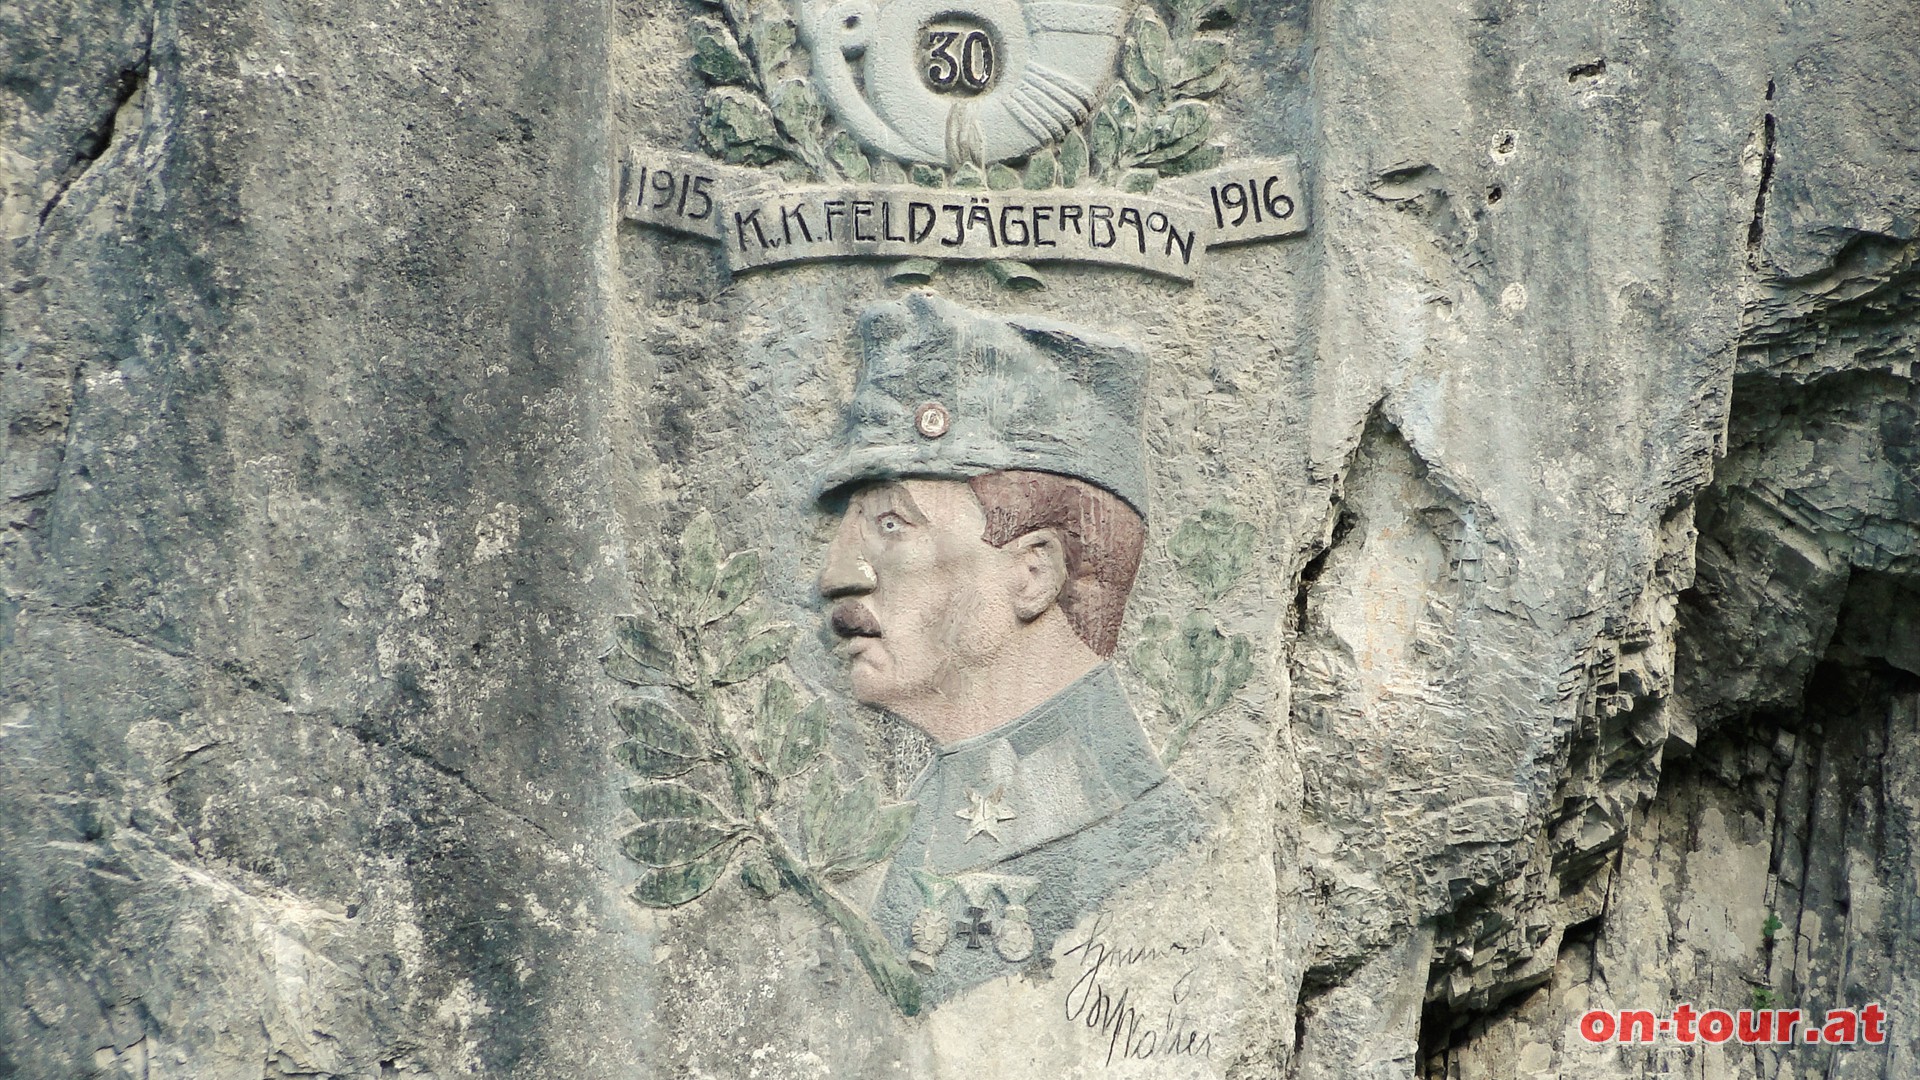 Hier hat sich das 30. KuK. FeldjägerBaon in den Kriegsjahren 1915 und 1916 verewigt.